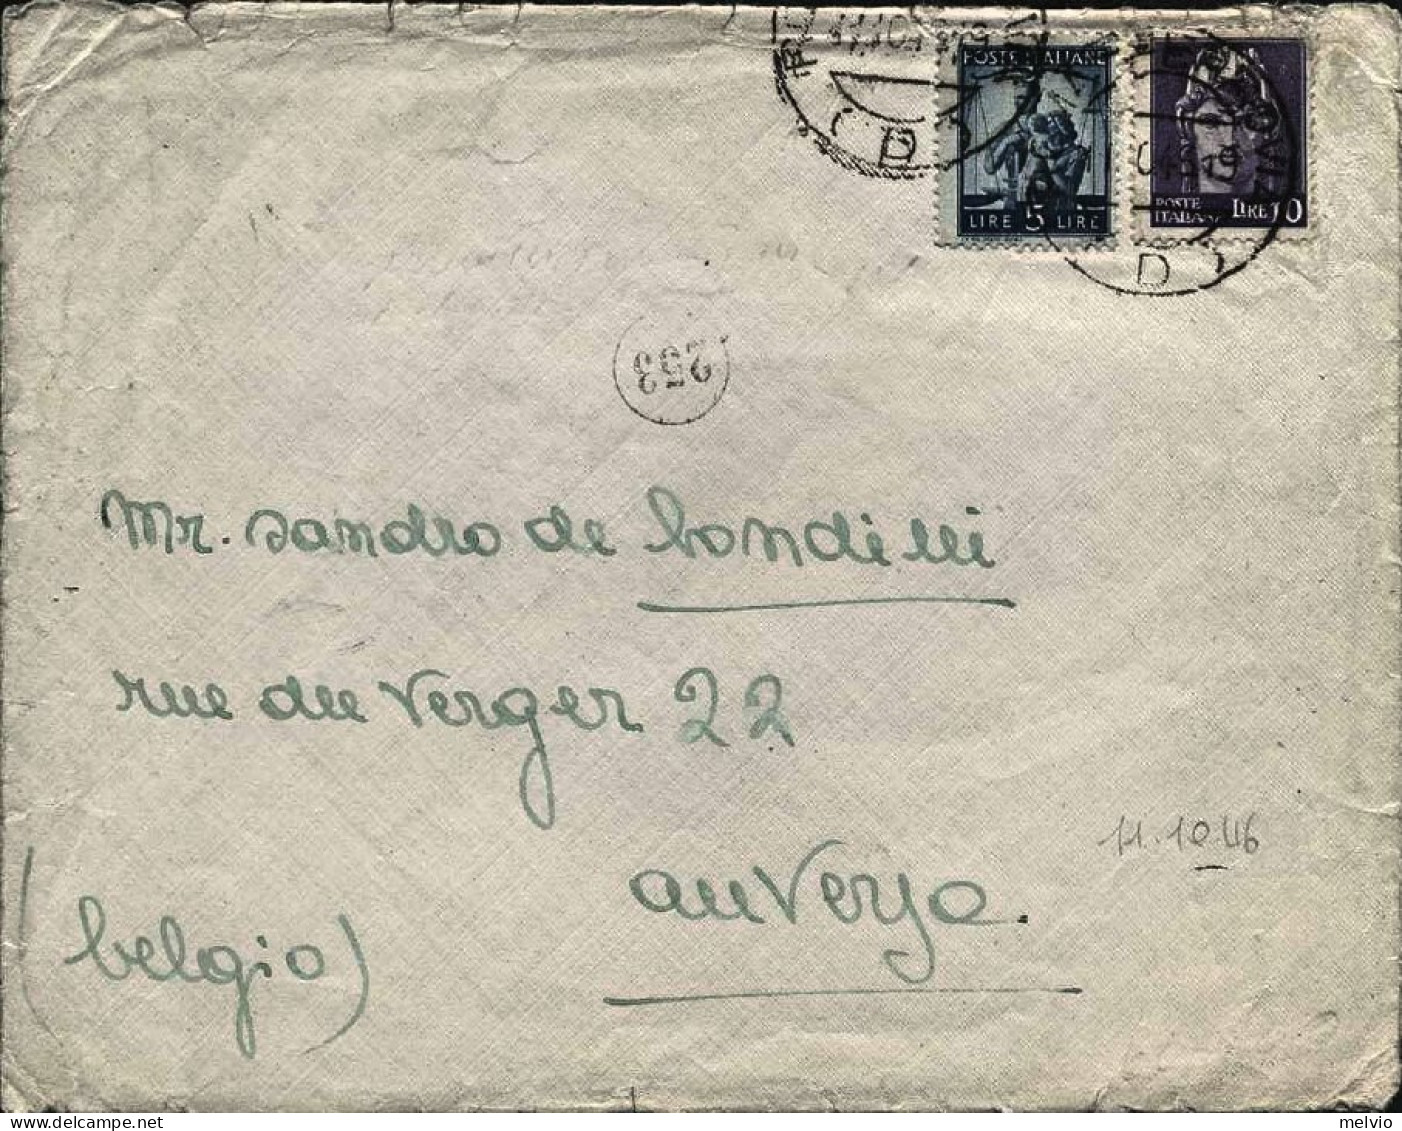 1946-mista Imperiale-Democratica Lettera Per Il Belgio Affr. L.10 Imperiale Senz - 1946-60: Storia Postale